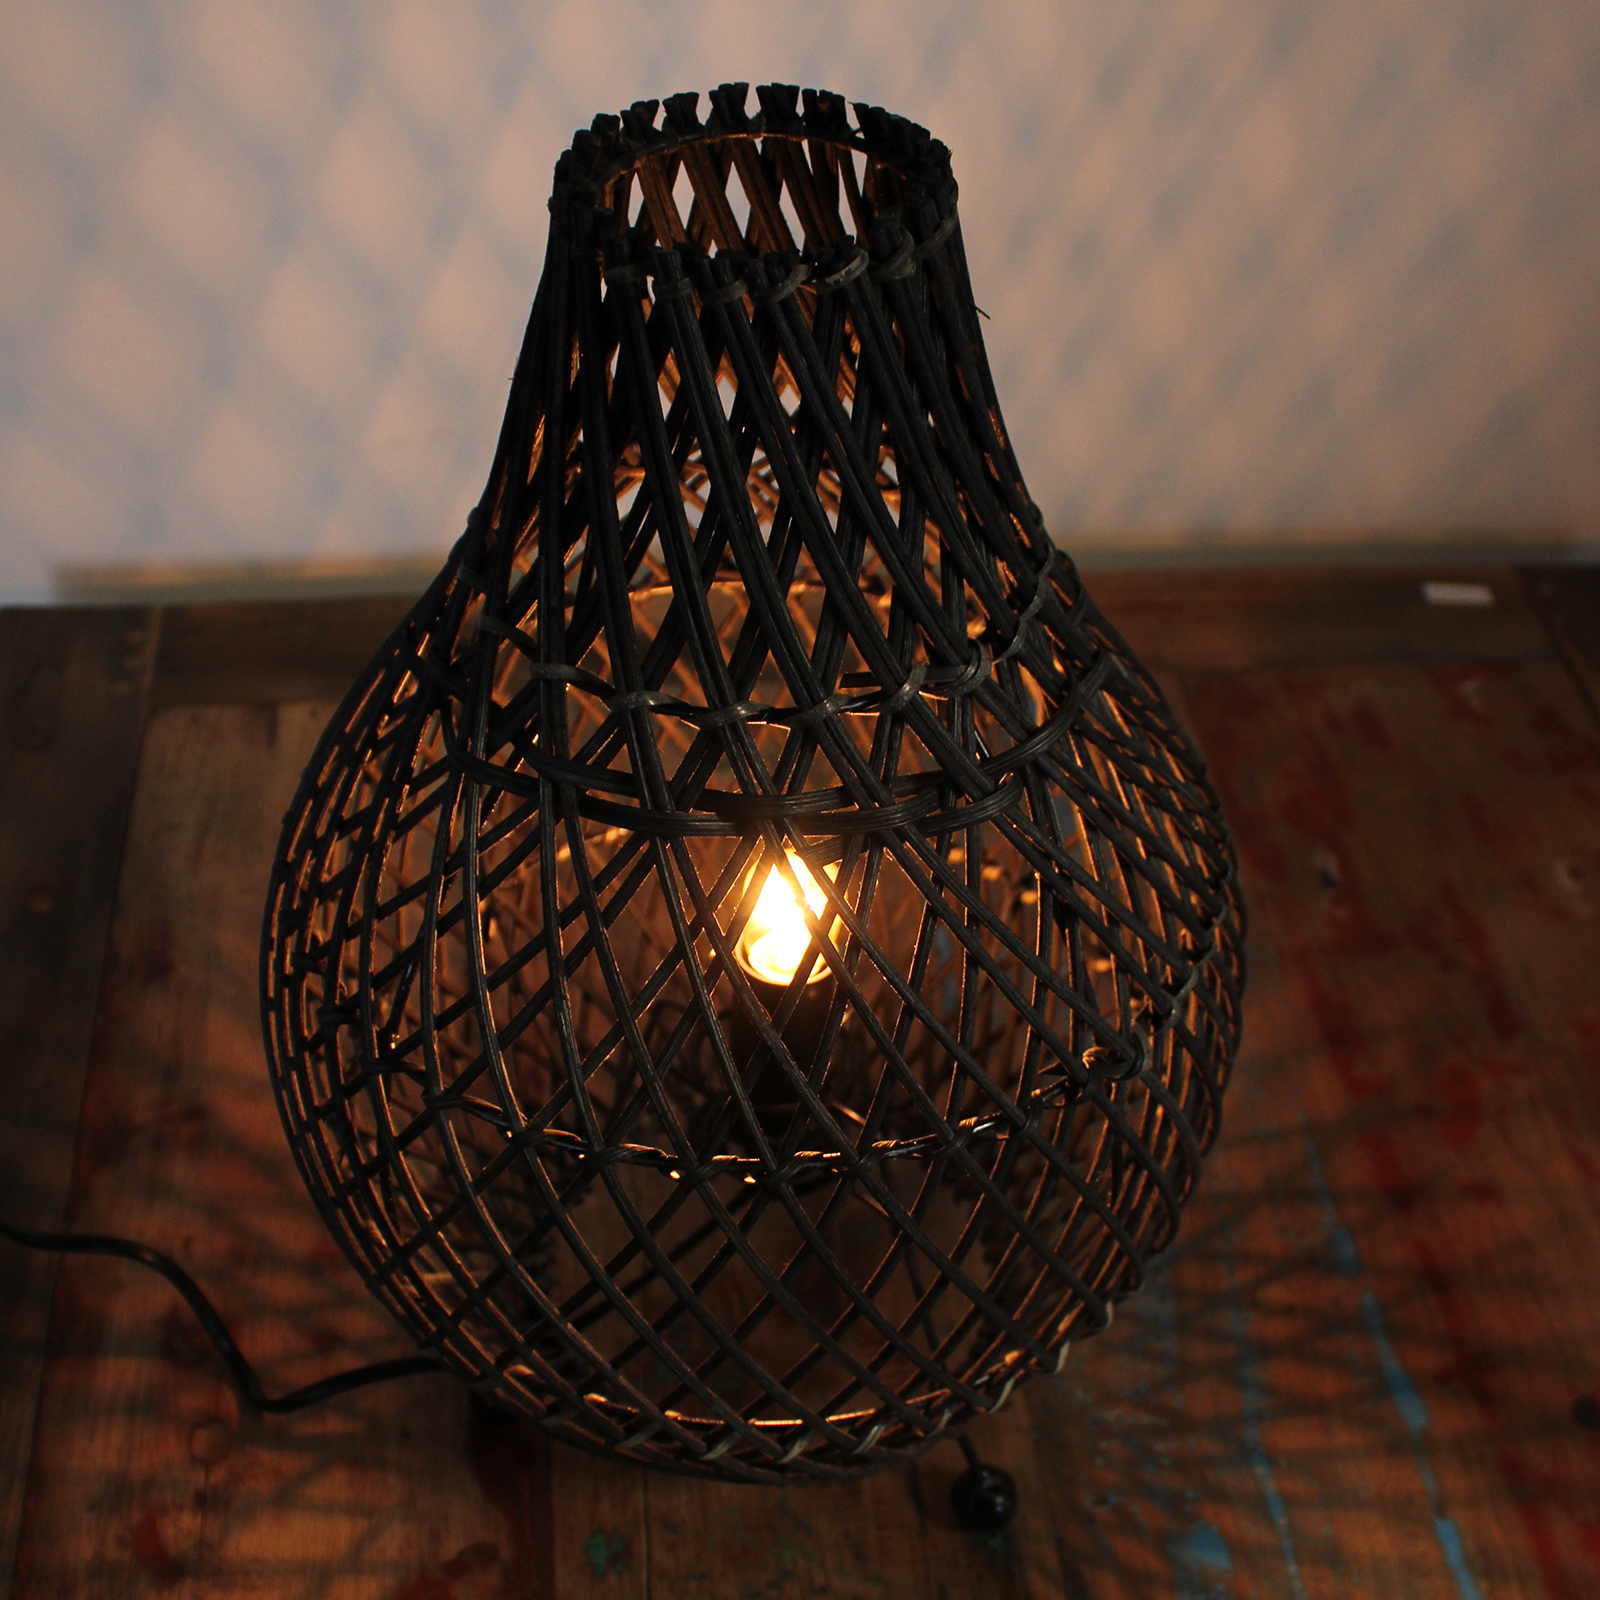 Rattan Table Lamp - Black